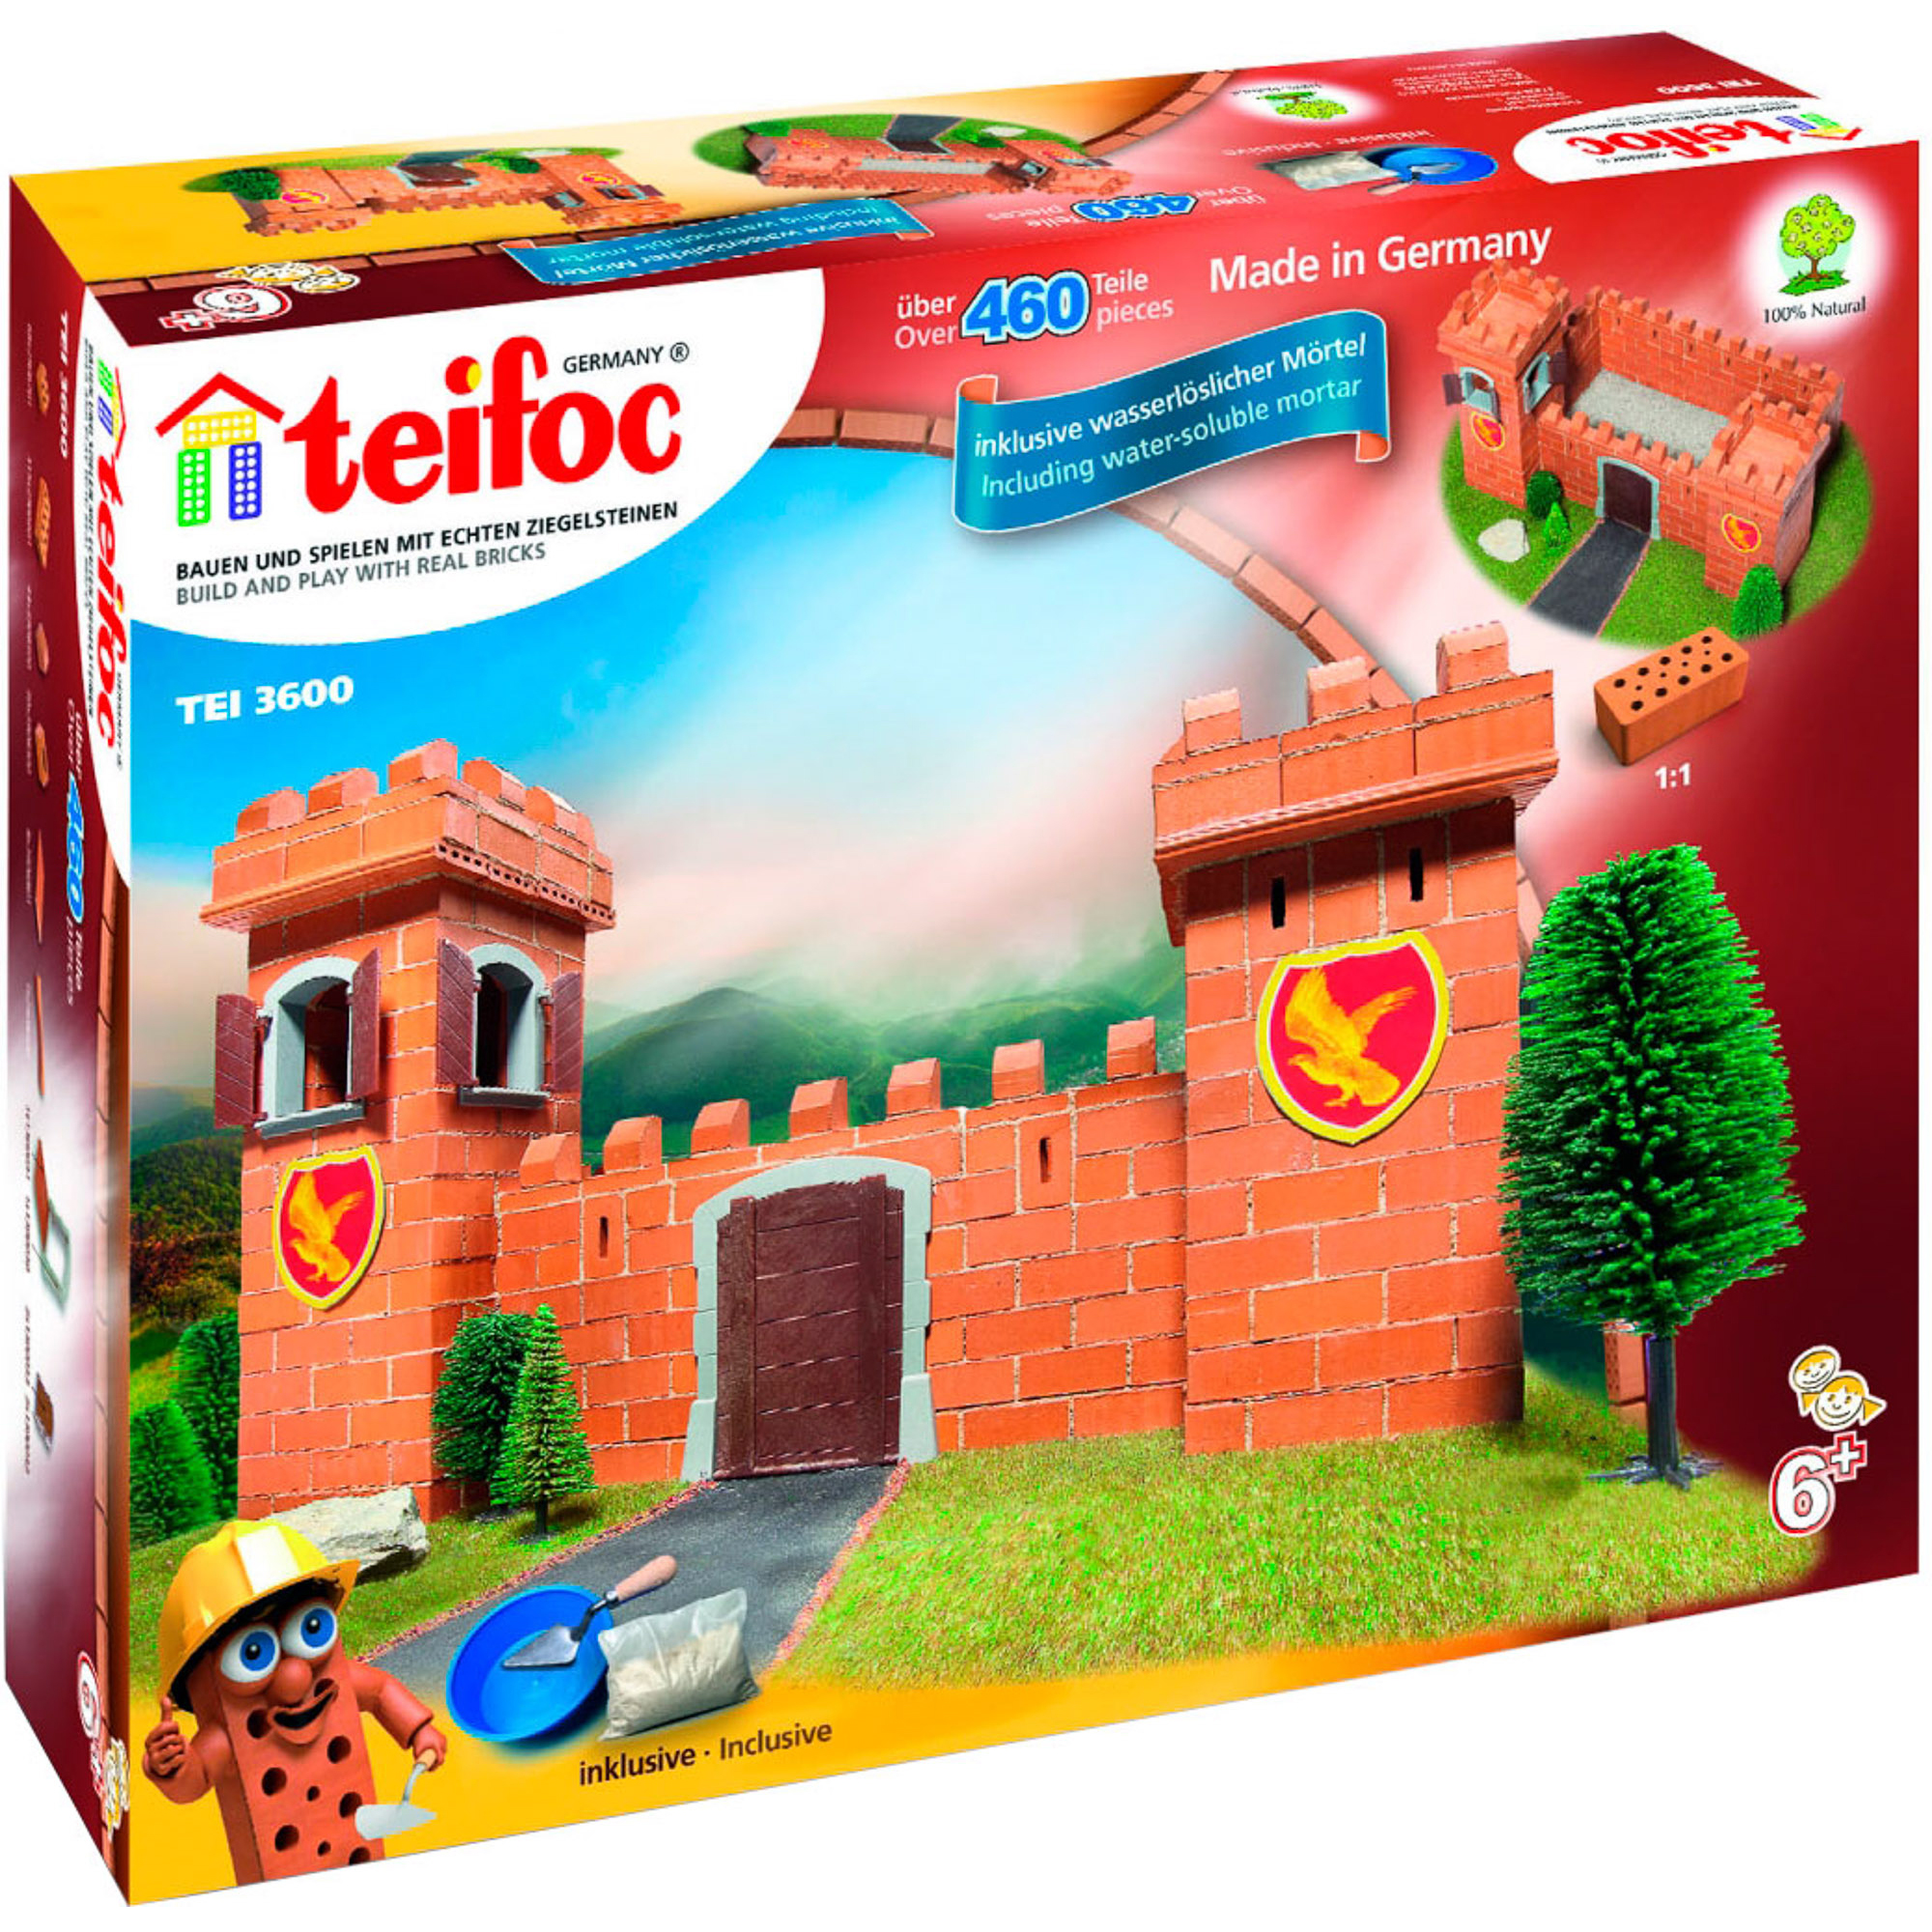 Игровой набор TEIFOC Рыцарский замок TEI 3600 набор для рисования на воде в технике эбру